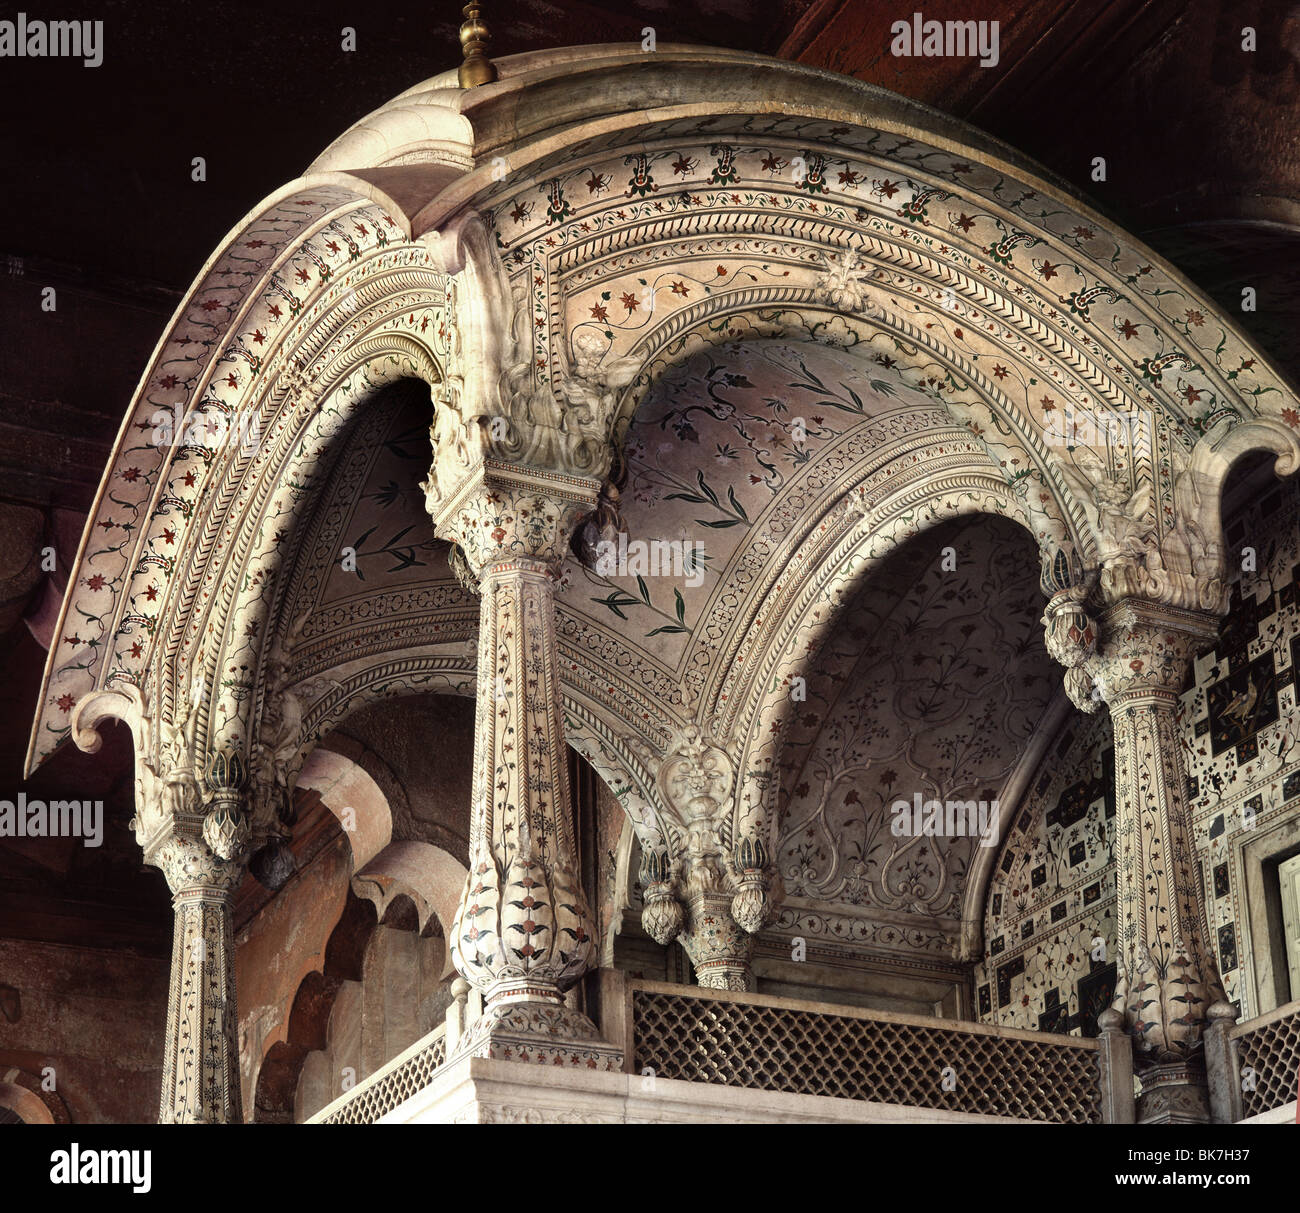 El trono de Akhbar, Fuerte Rojo, Sitio del Patrimonio Mundial de la UNESCO, Nueva Delhi, India, Asia Foto de stock